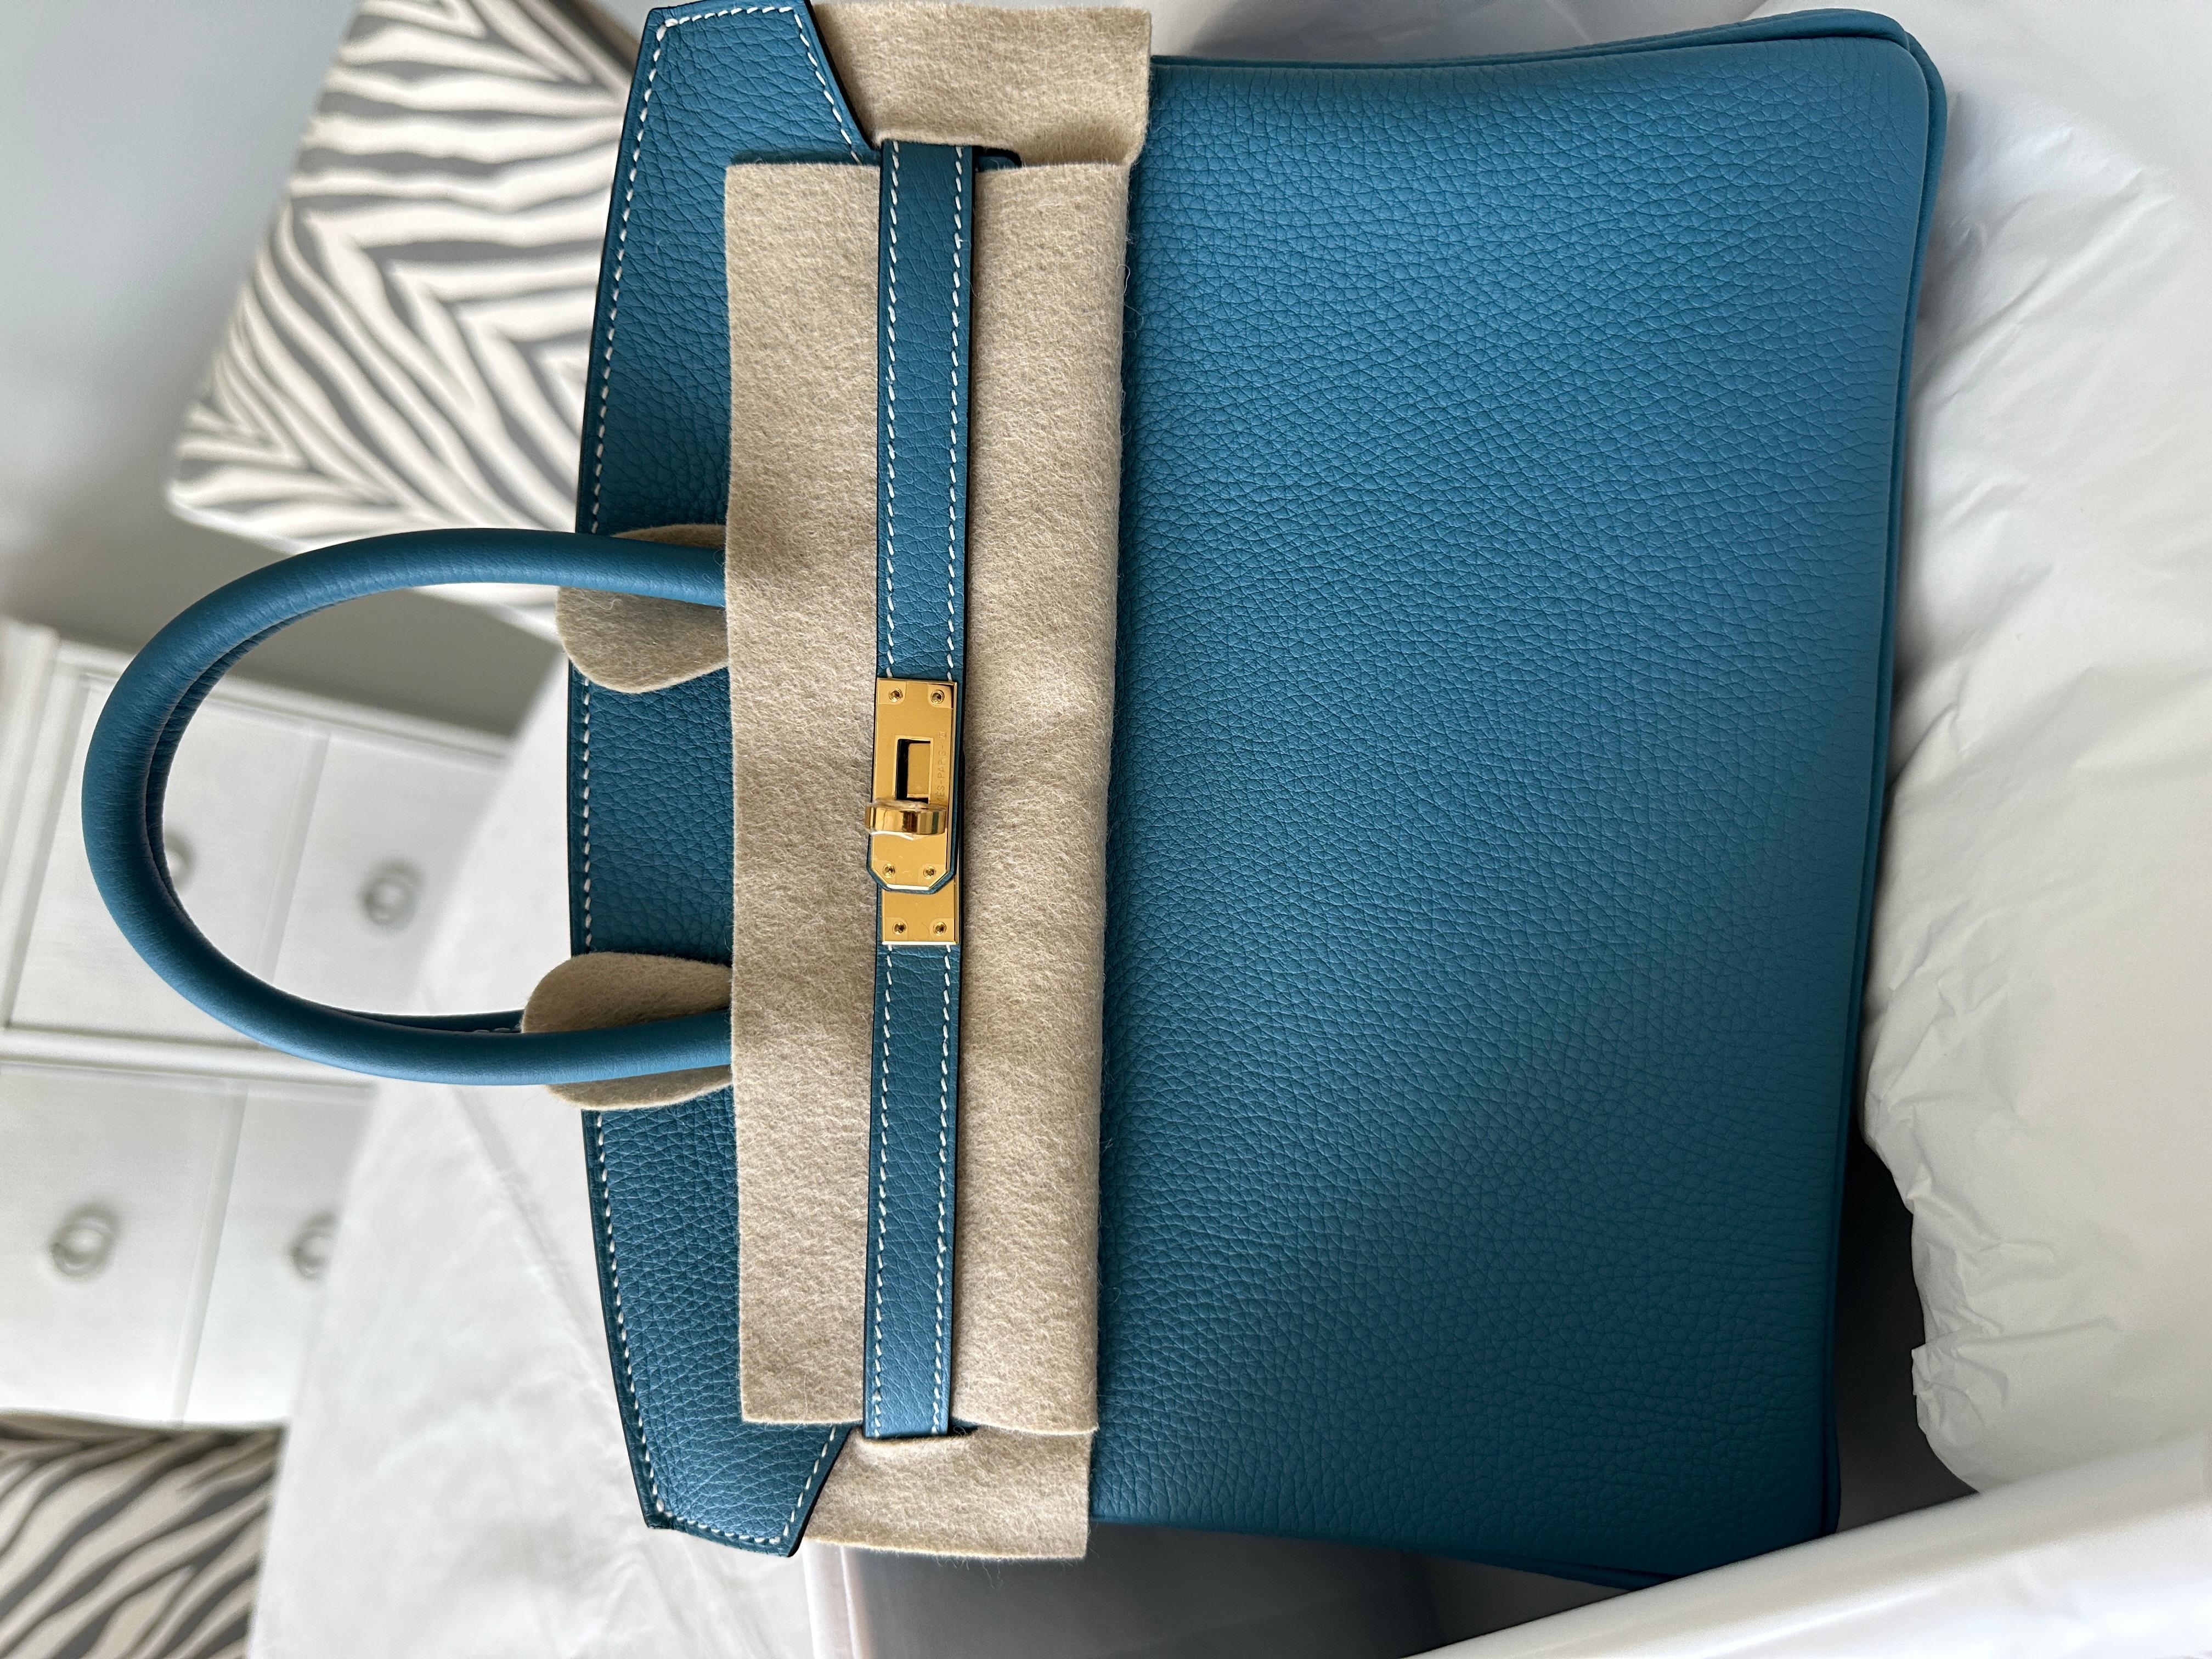 Hermes Birkin 25cm
Blue Jean , une couleur classique d'Hermès, l'une de ses couleurs les plus populaires.
Quincaillerie en or
Le Birkin d'Hermès est un sac à main de luxe de la maison de couture Hermès. Il s'agit d'une variante de l'emblématique sac